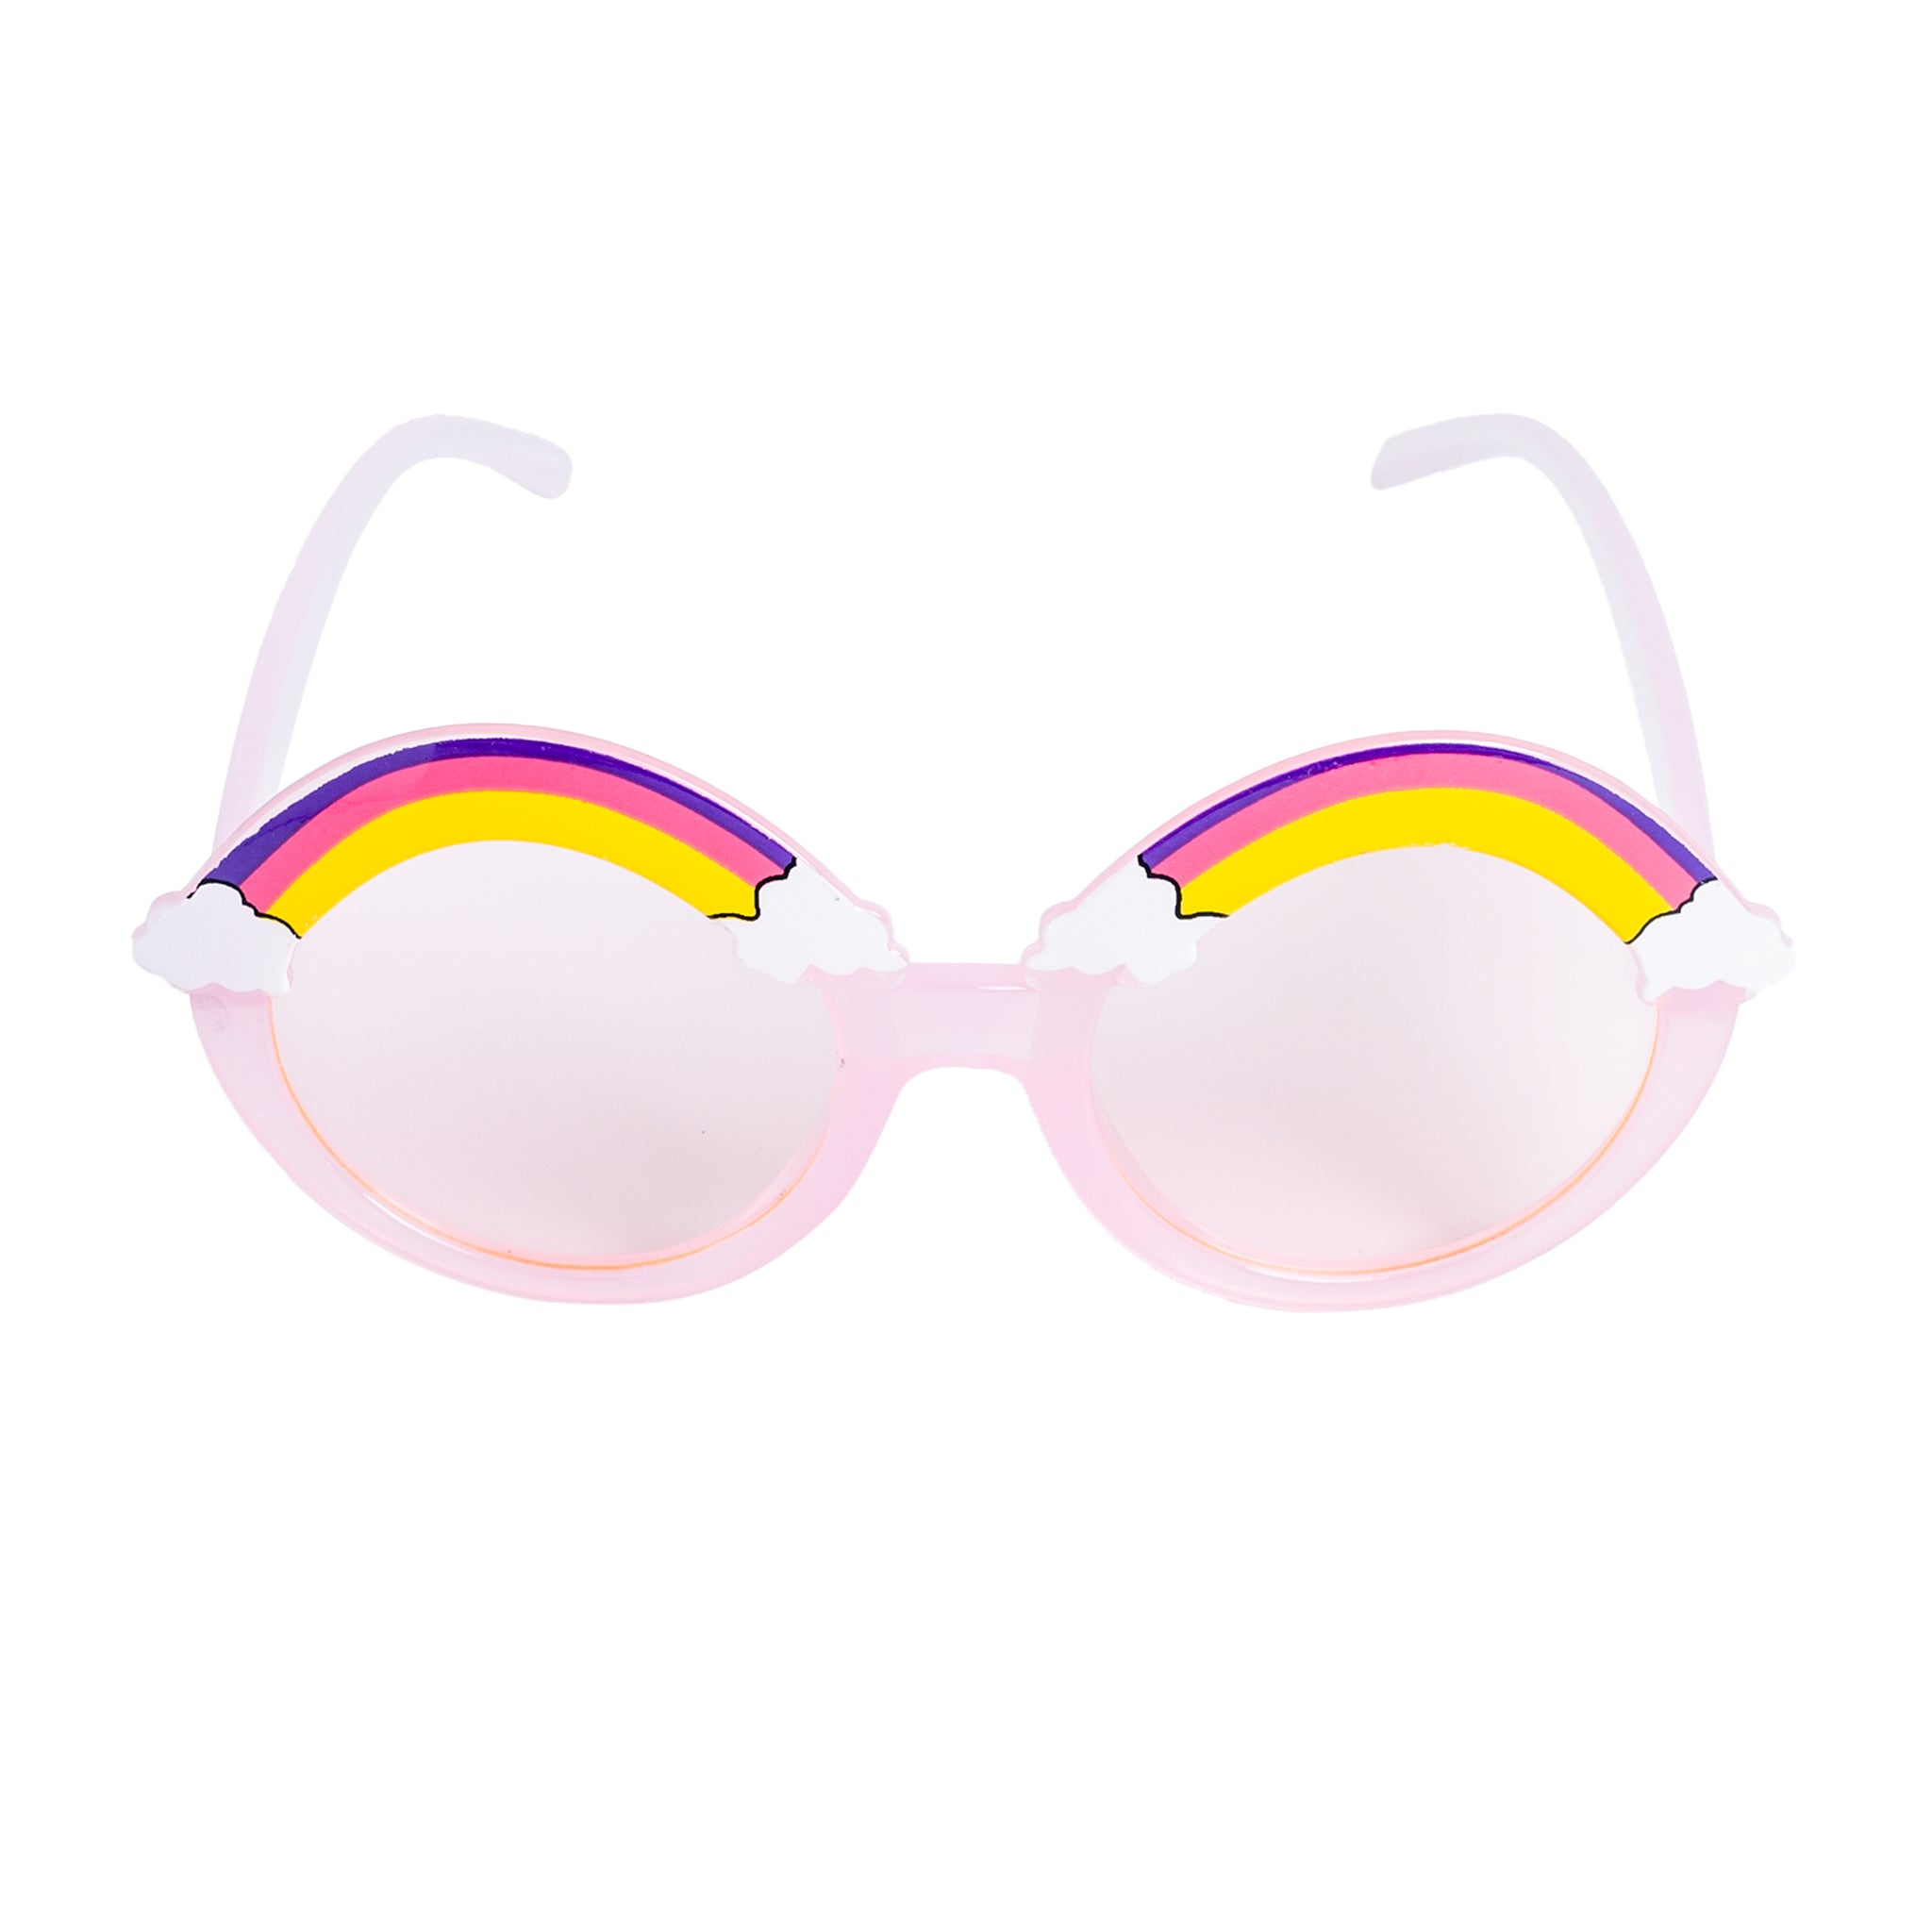 Chokore Round Rainbow Sunglasses